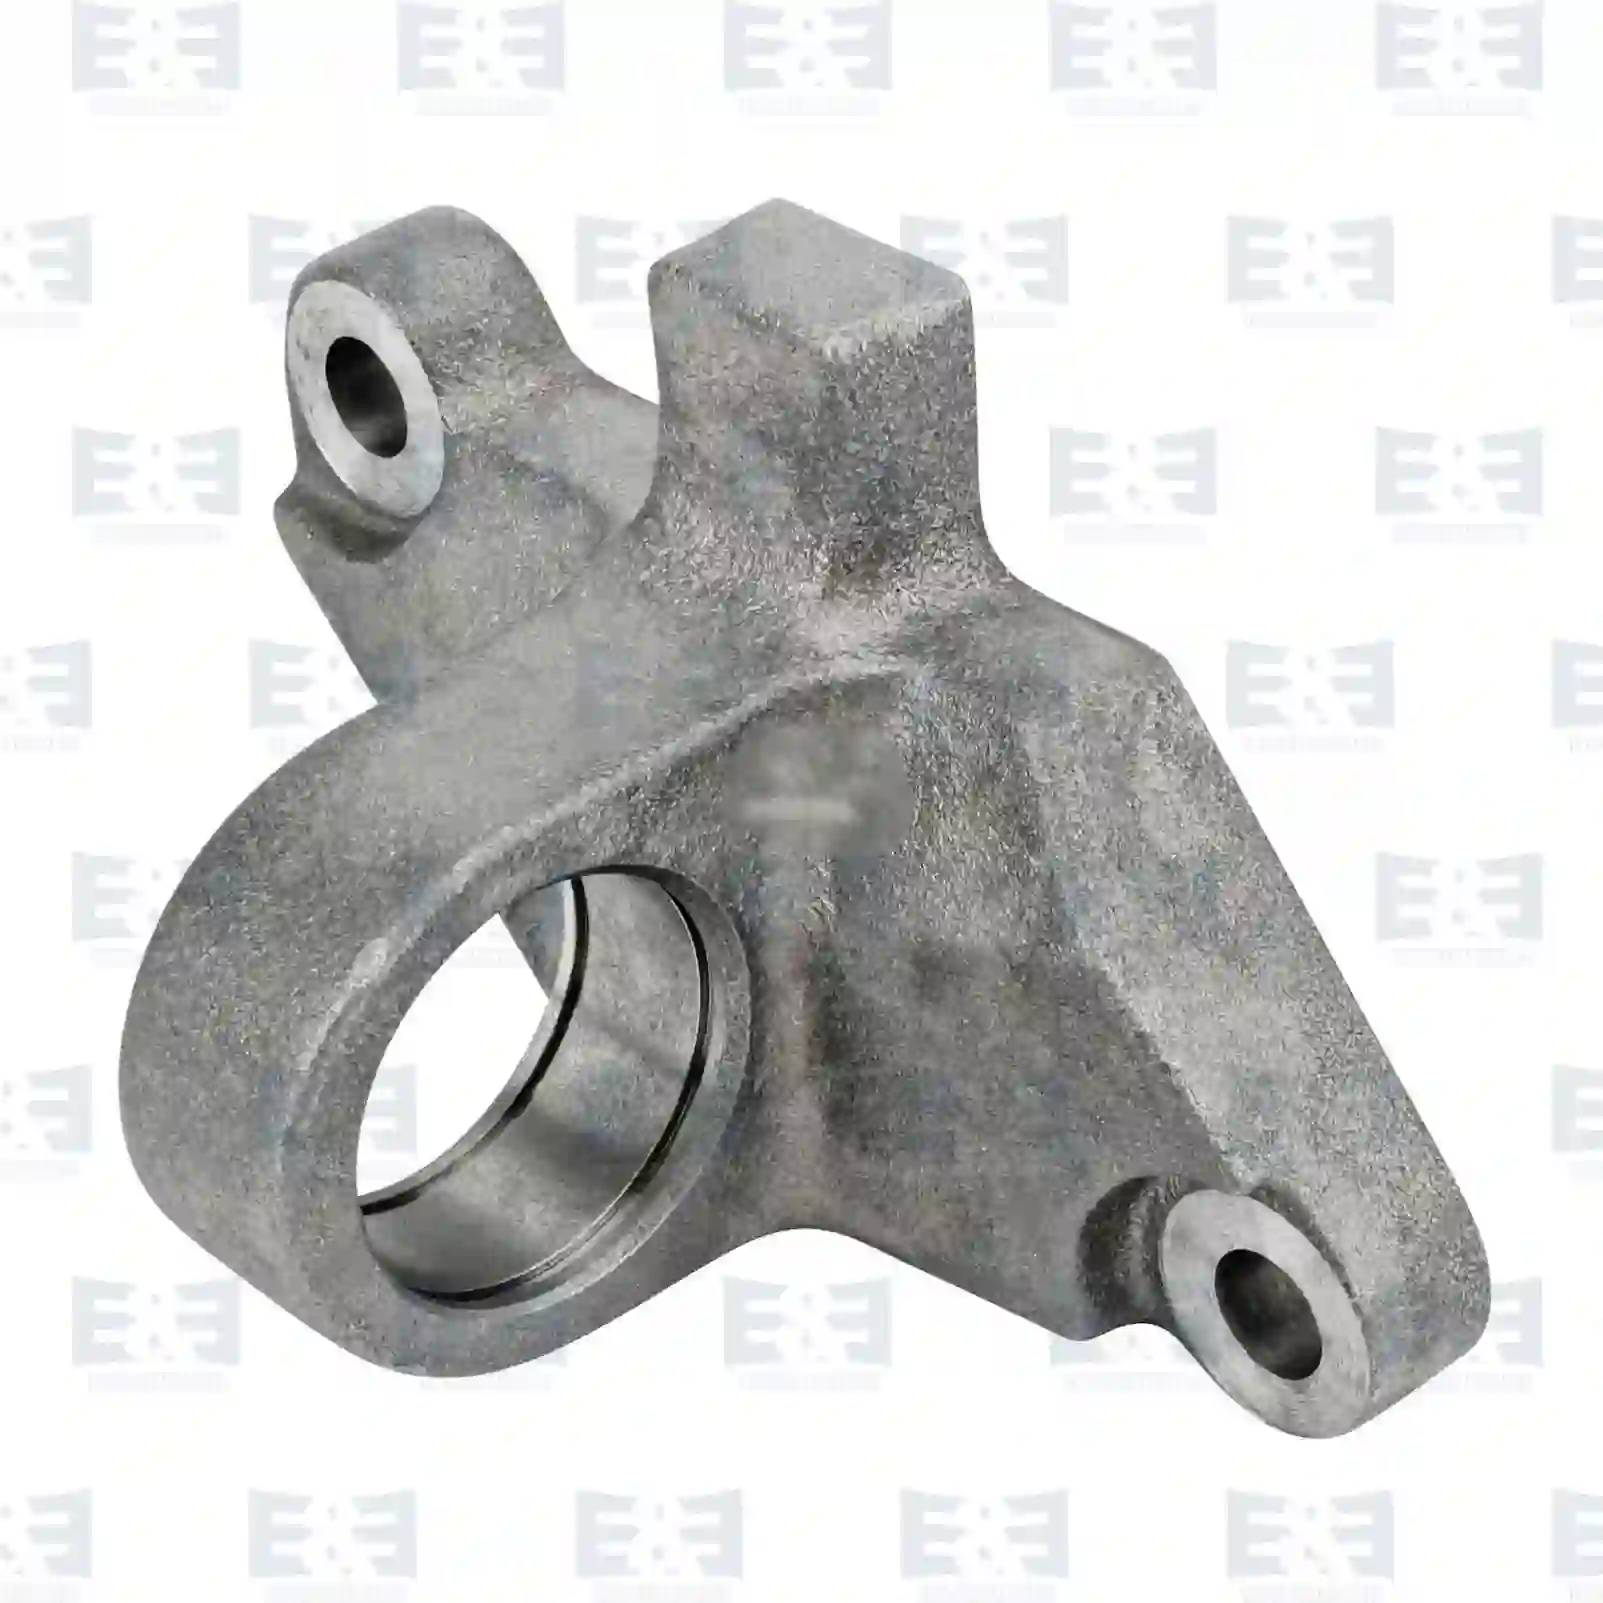  Bearing bracket, release fork || E&E Truck Spare Parts | Truck Spare Parts, Auotomotive Spare Parts